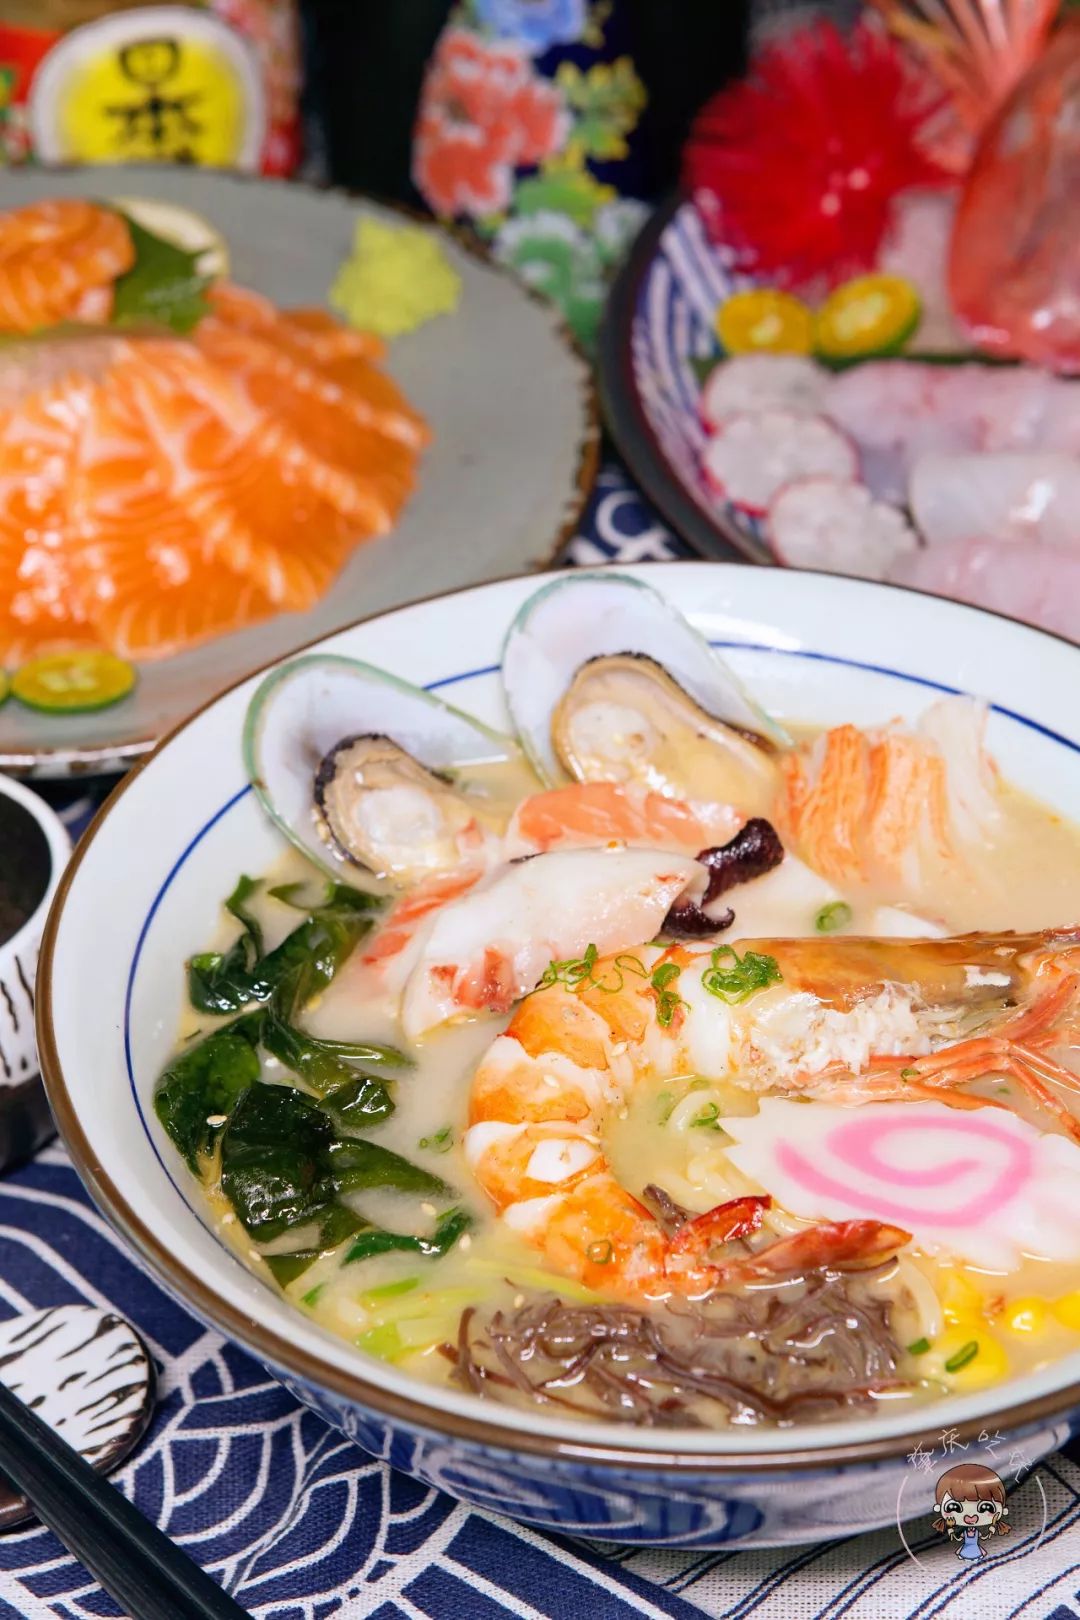 海鲜汤底 浓郁而不腻,搭配 筋道爽滑的日式拉面一试难忘,大虾,青口和